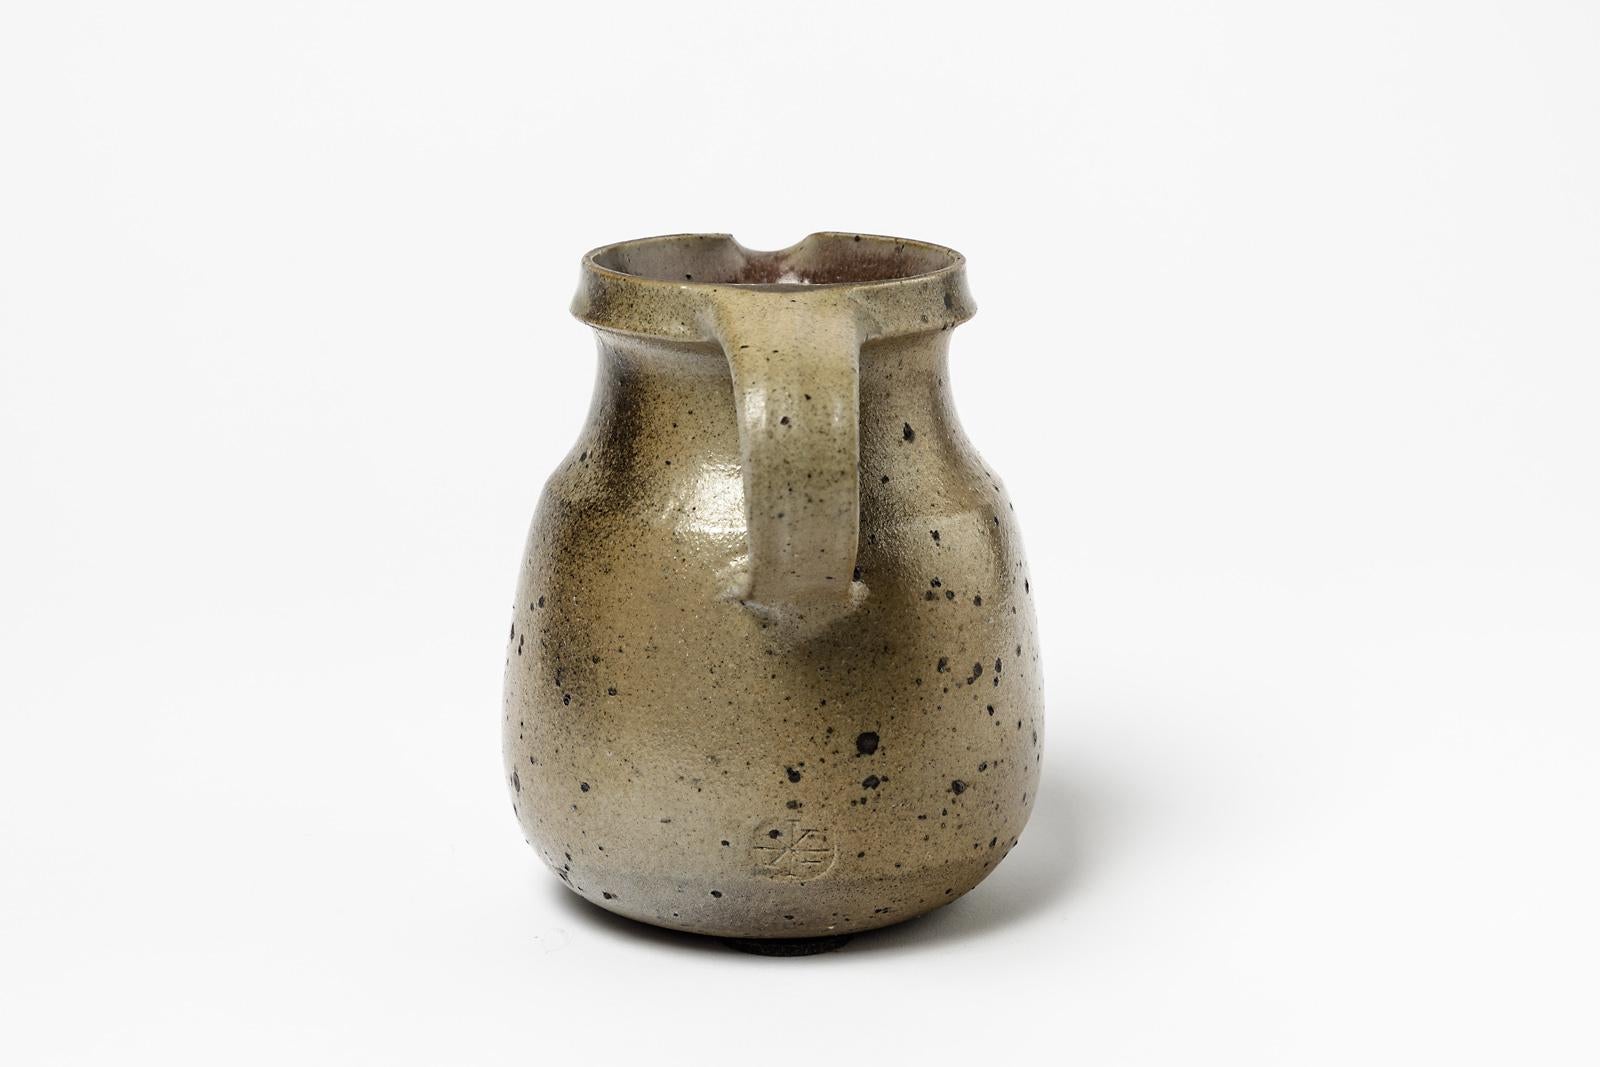 French Midcentury Design Brown Stoneware Ceramic Pitcher by Robert Deblander, 1975